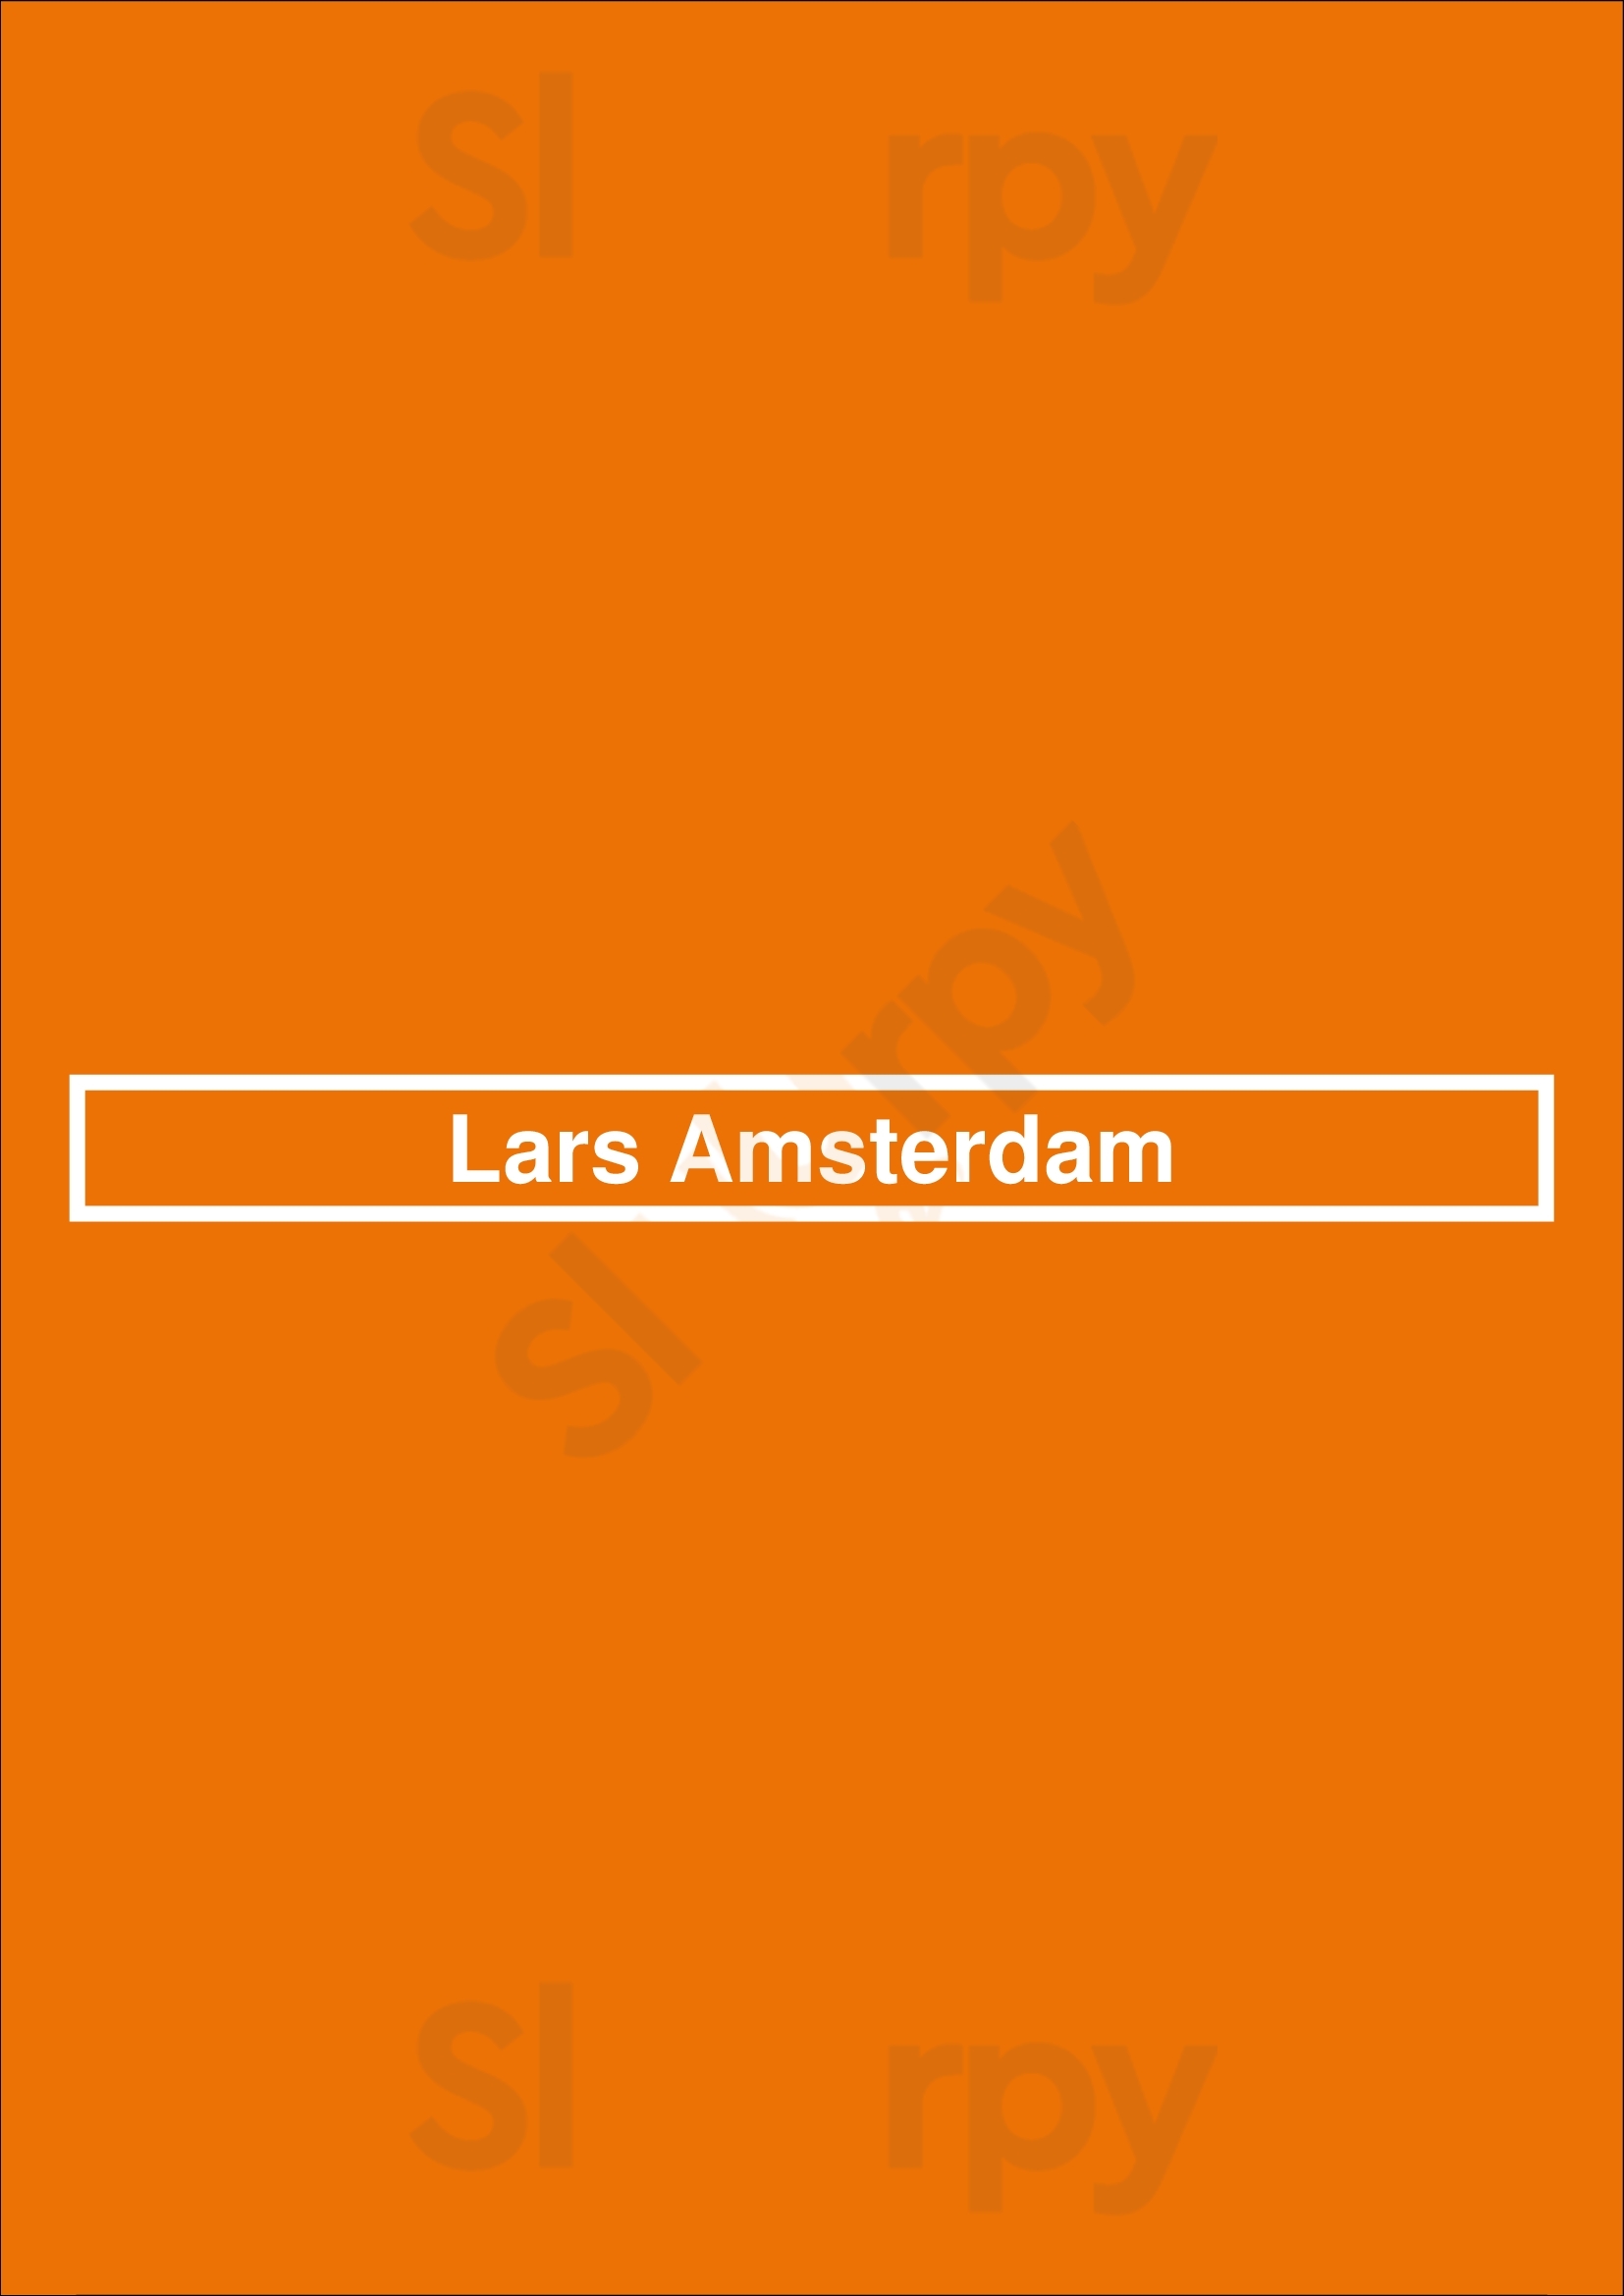 Lars Amsterdam Amsterdam Menu - 1